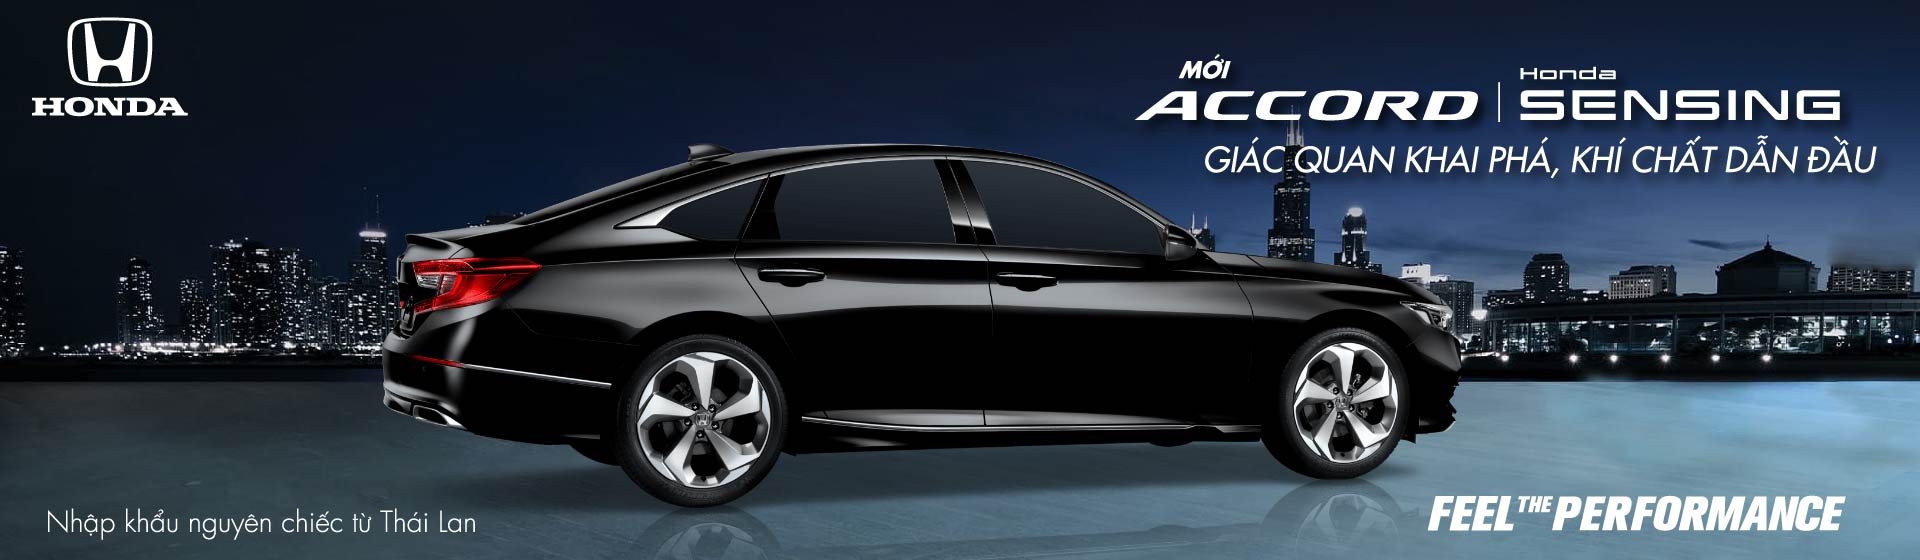 Honda Accord - Giác quan khai phá, Khí chất dẫn đầu